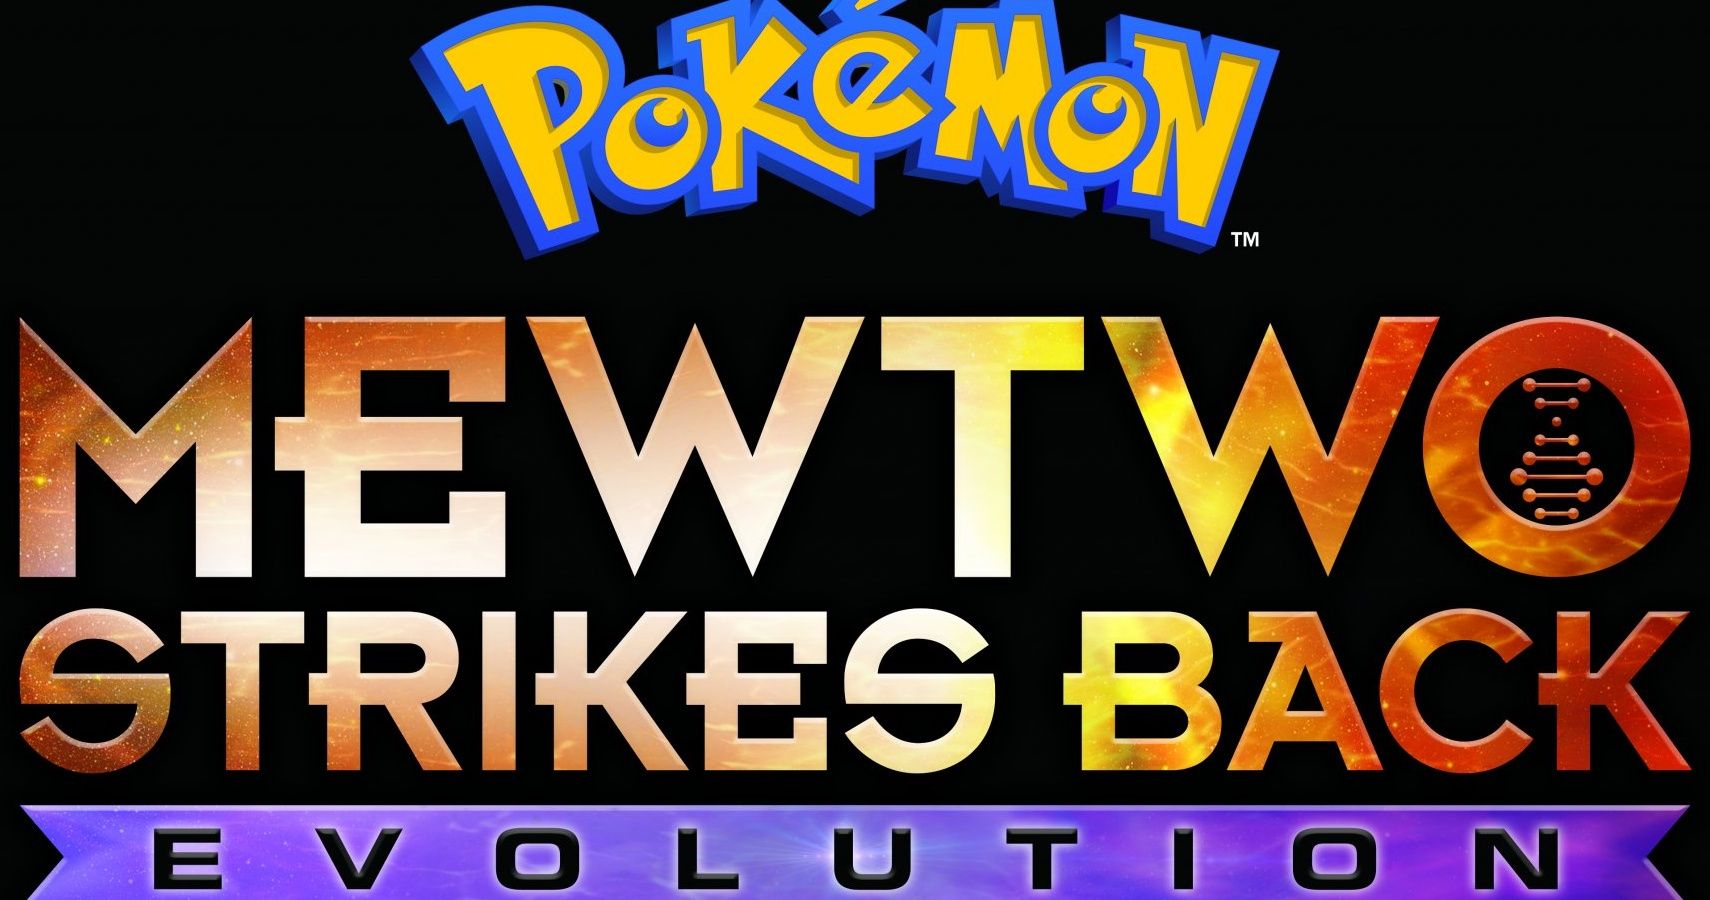 Pokemon: MEWTWO STRIKES BACK - EVOLUTION Spoilers Review